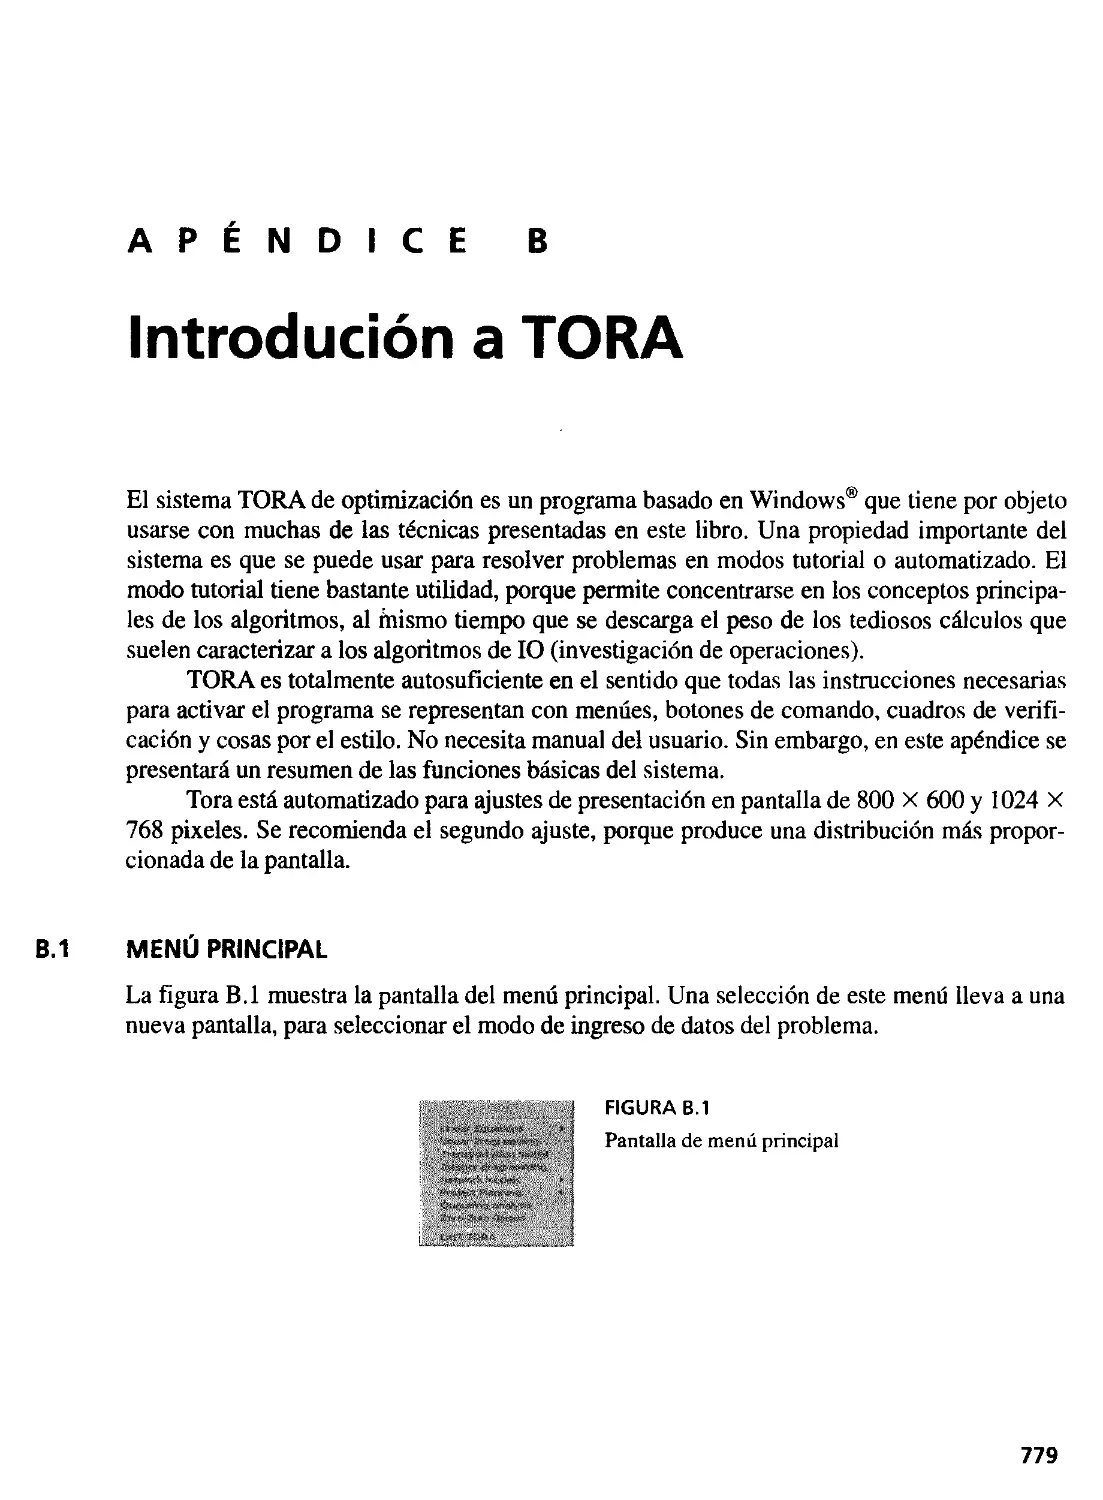 B. Introducción a TORA